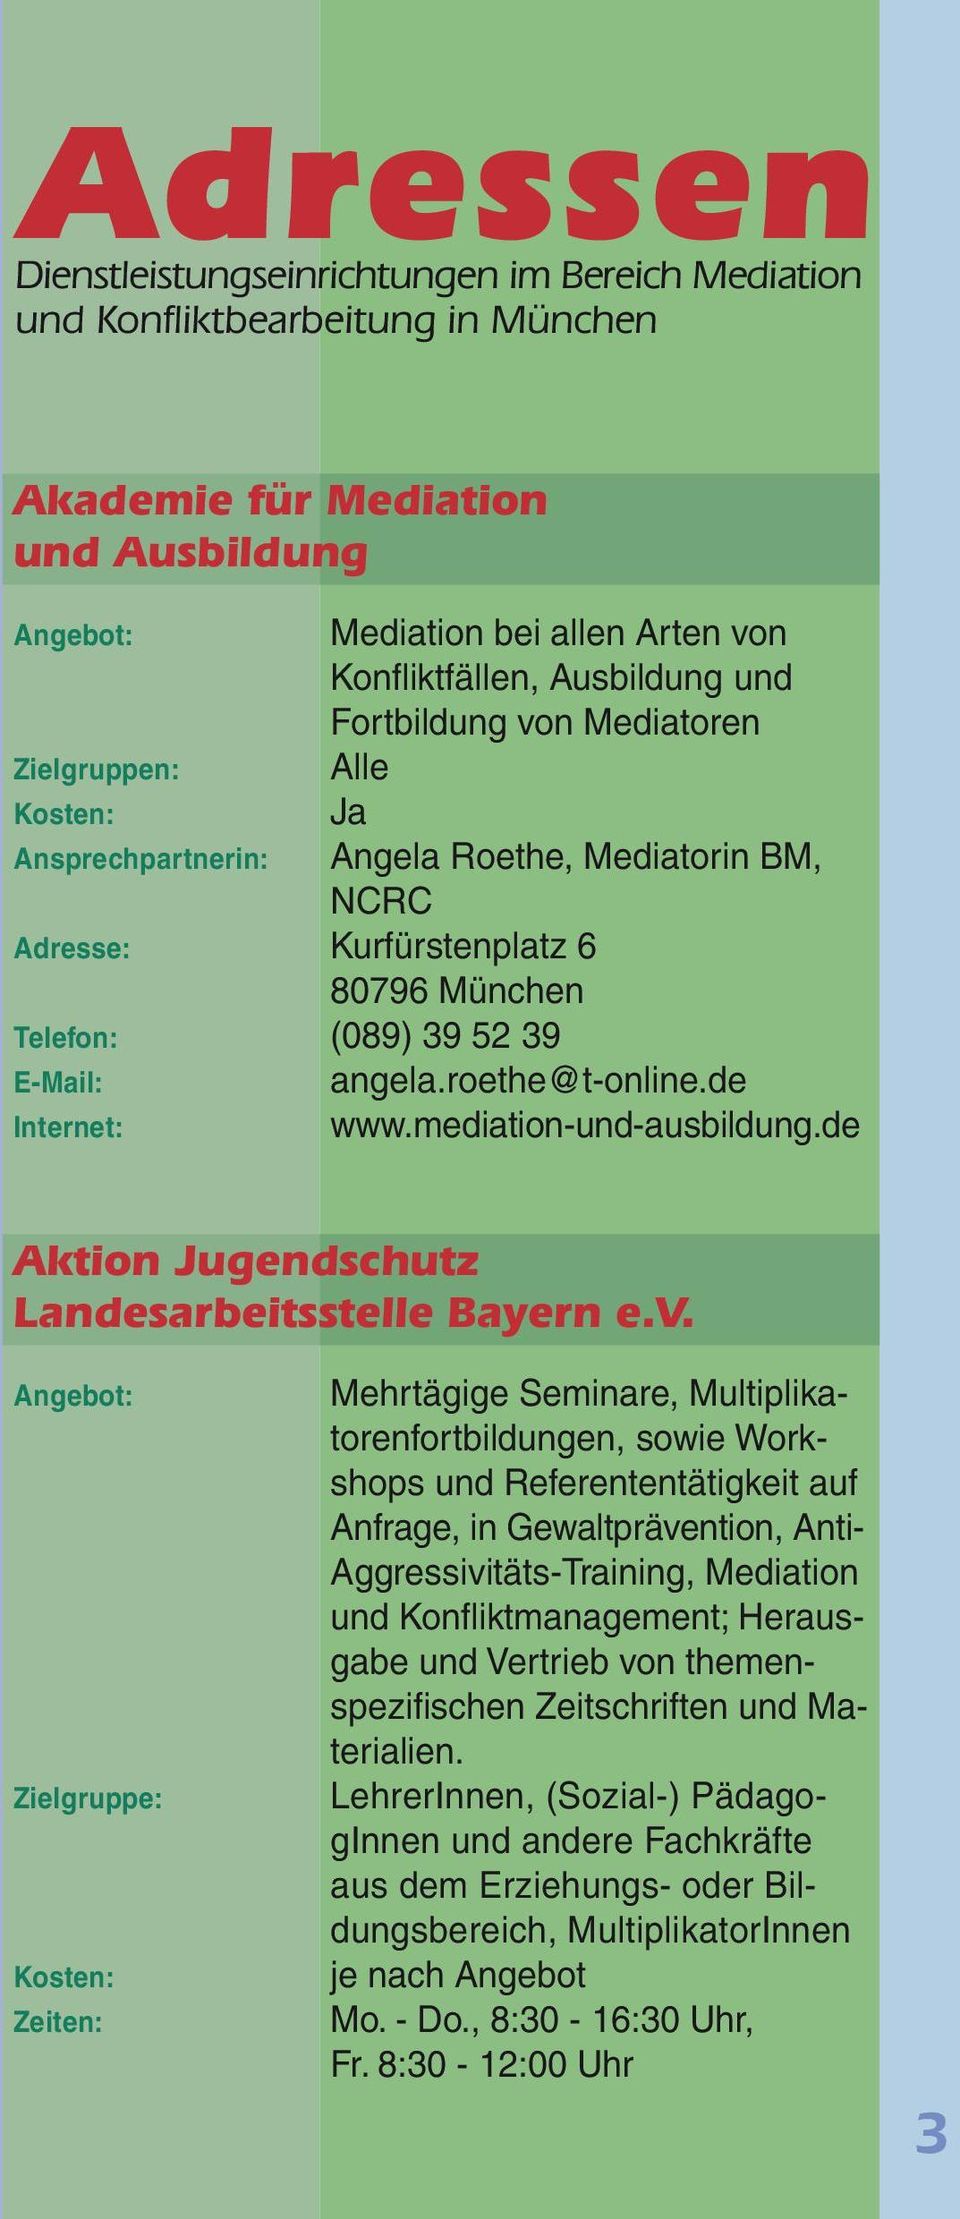 mediation-und-ausbildung.de Aktion Jugendschutz Landesarbeitsstelle Bayern e.v.